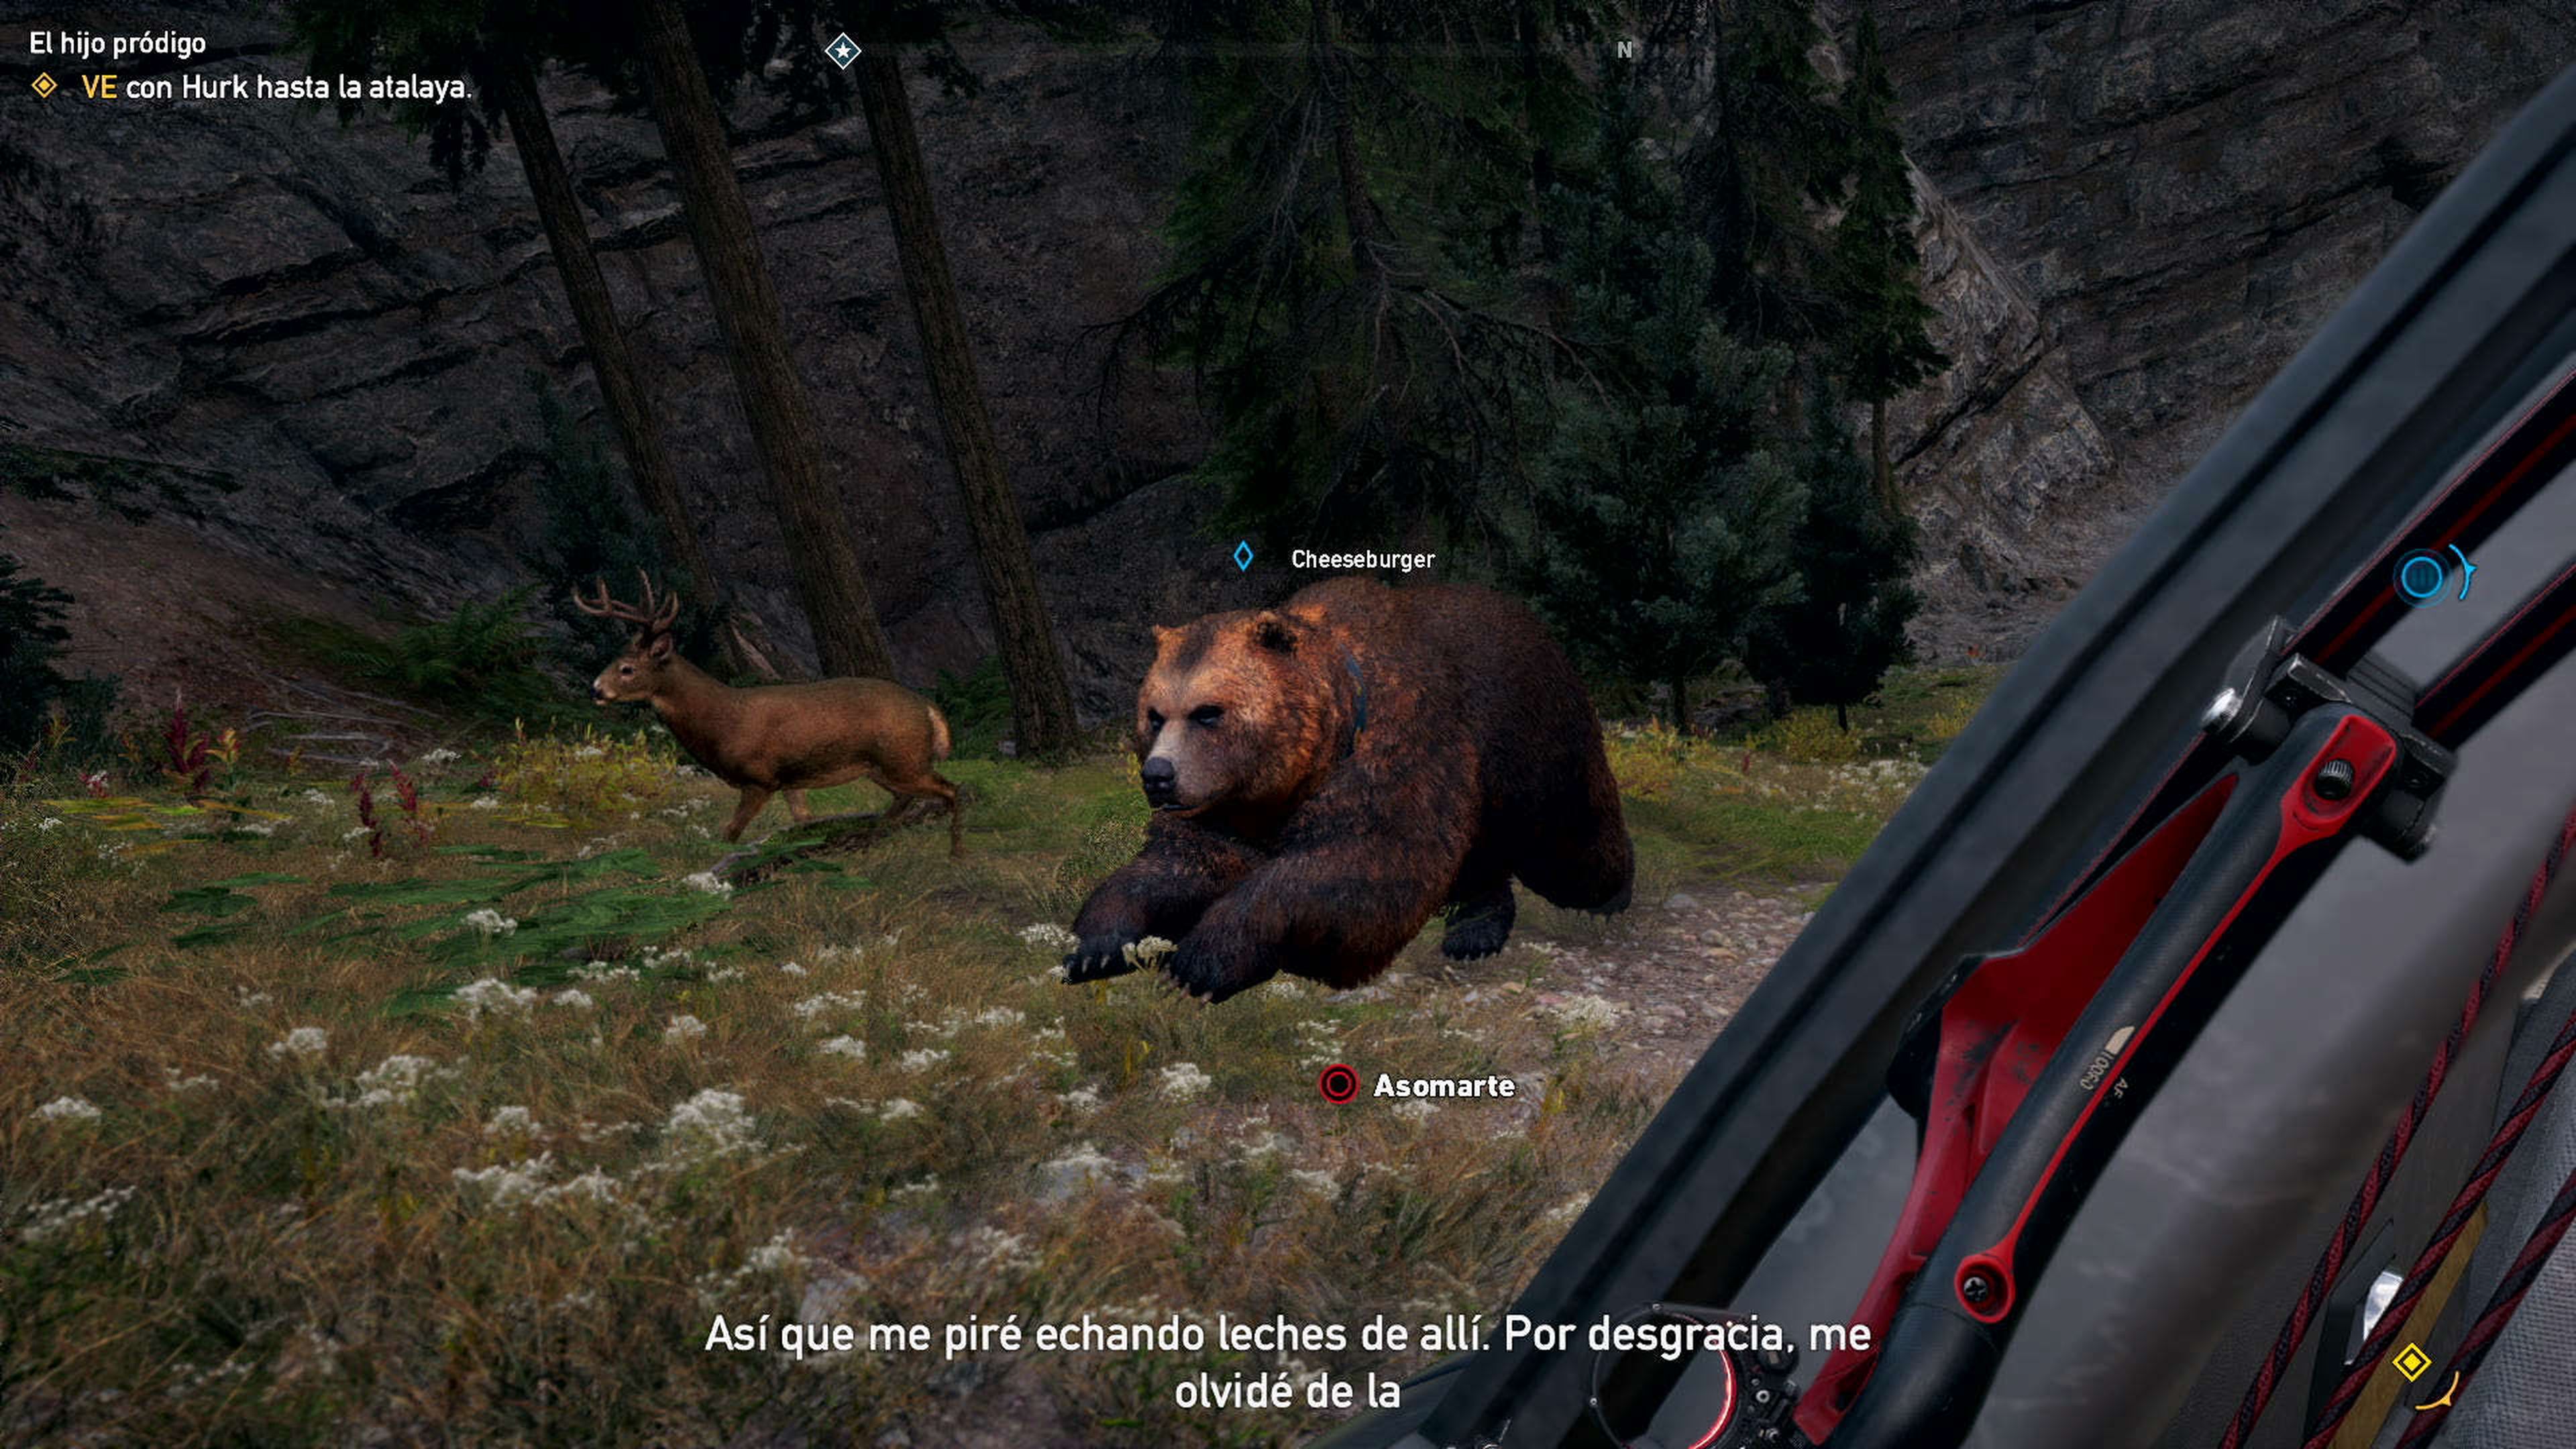 El oso Cheeseburger, estrella indiscutible de Far Cry 5, nos sigue a todas partes. Una pena no poder subirlo al coche.